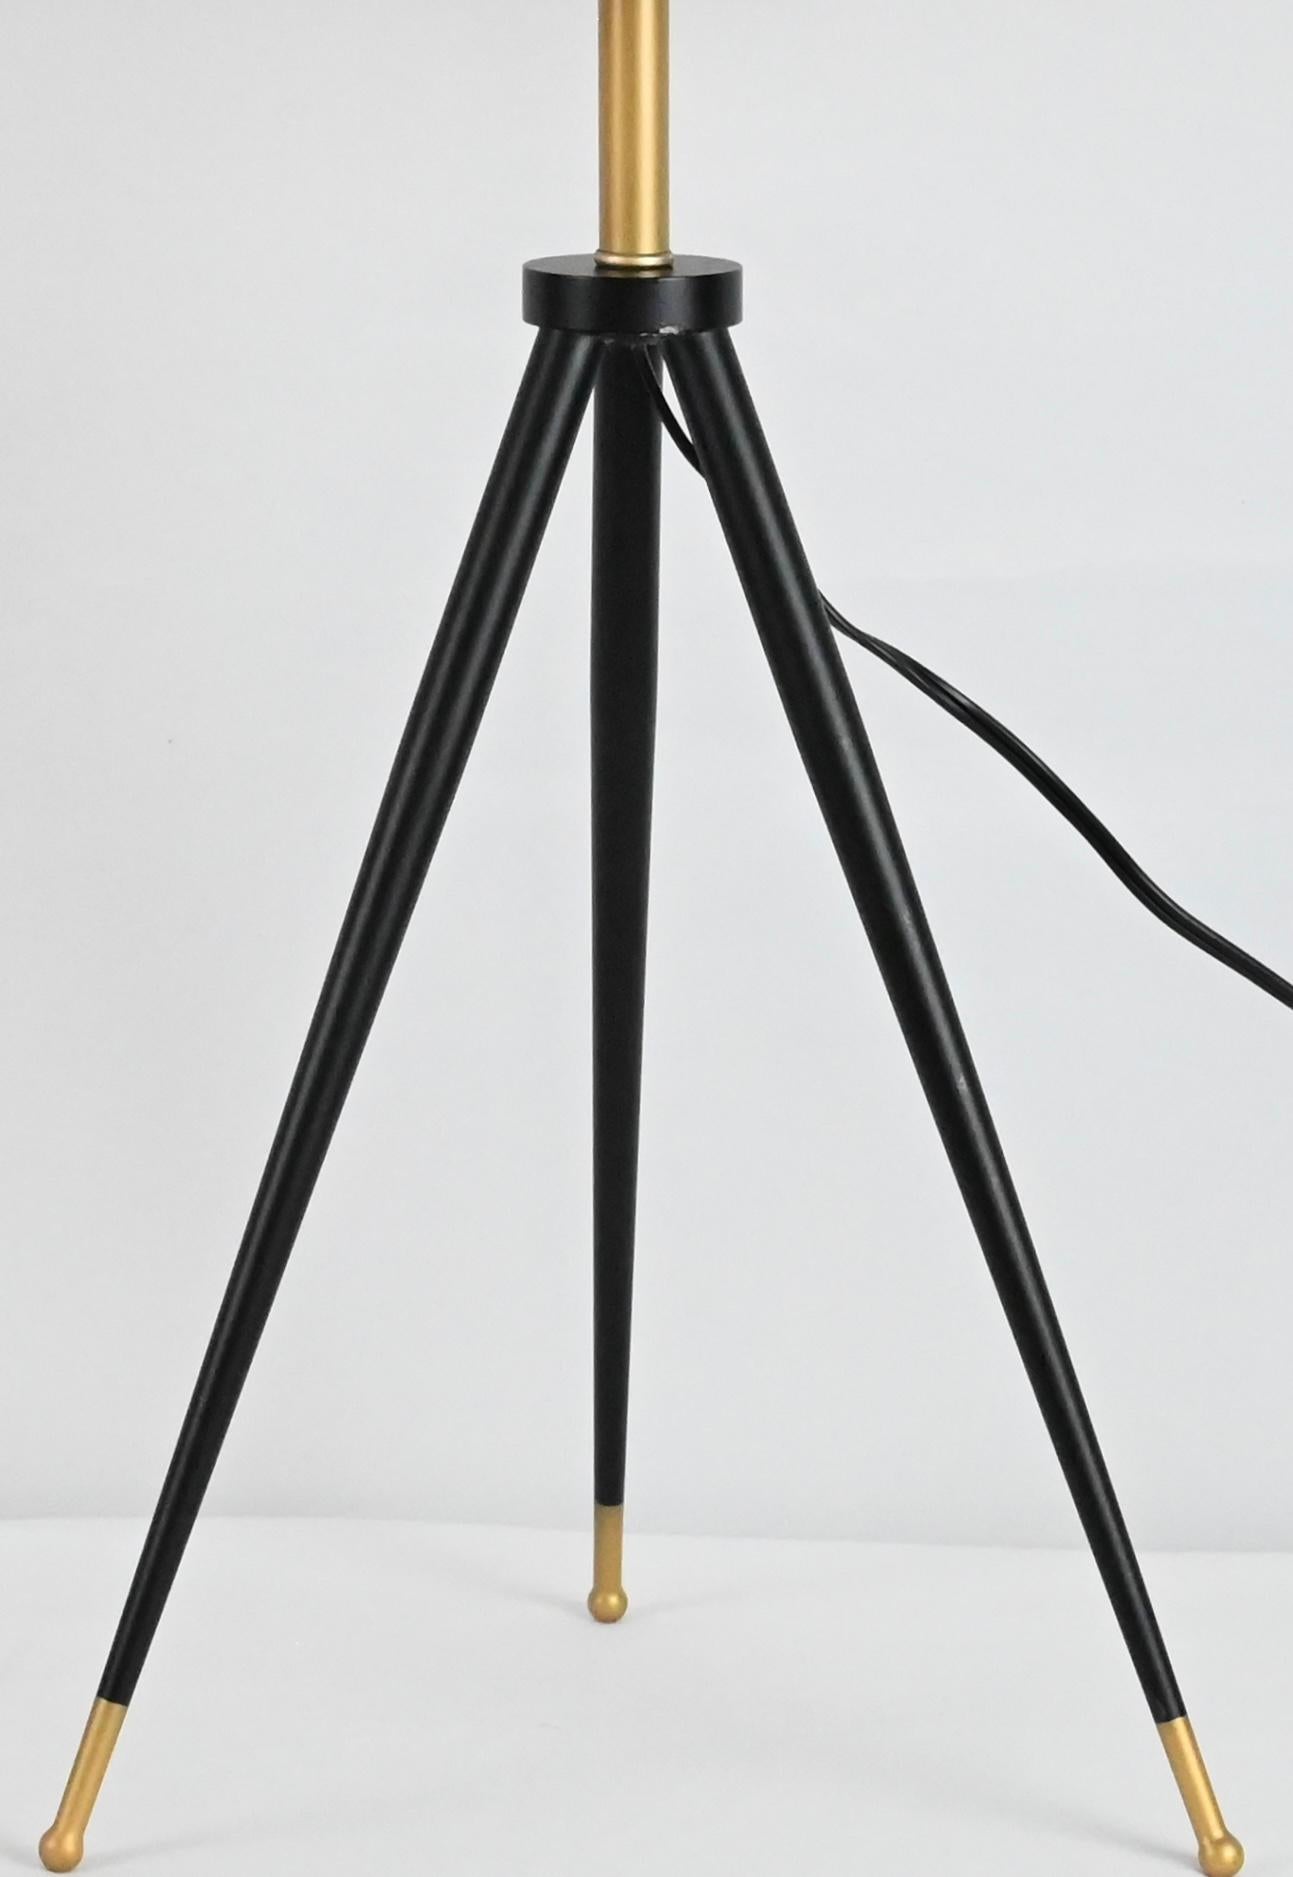 Ein Paar Dreibeinlampen in zeitgenössischem Design.  Sehr schlank und stilvoll. 
Der Sockel dieser Lampen ist aus schwarz lackiertem Holz und die Schirme sind aus goldfarbenem Metall gefertigt. 
 
Jede Maßnahme:  28